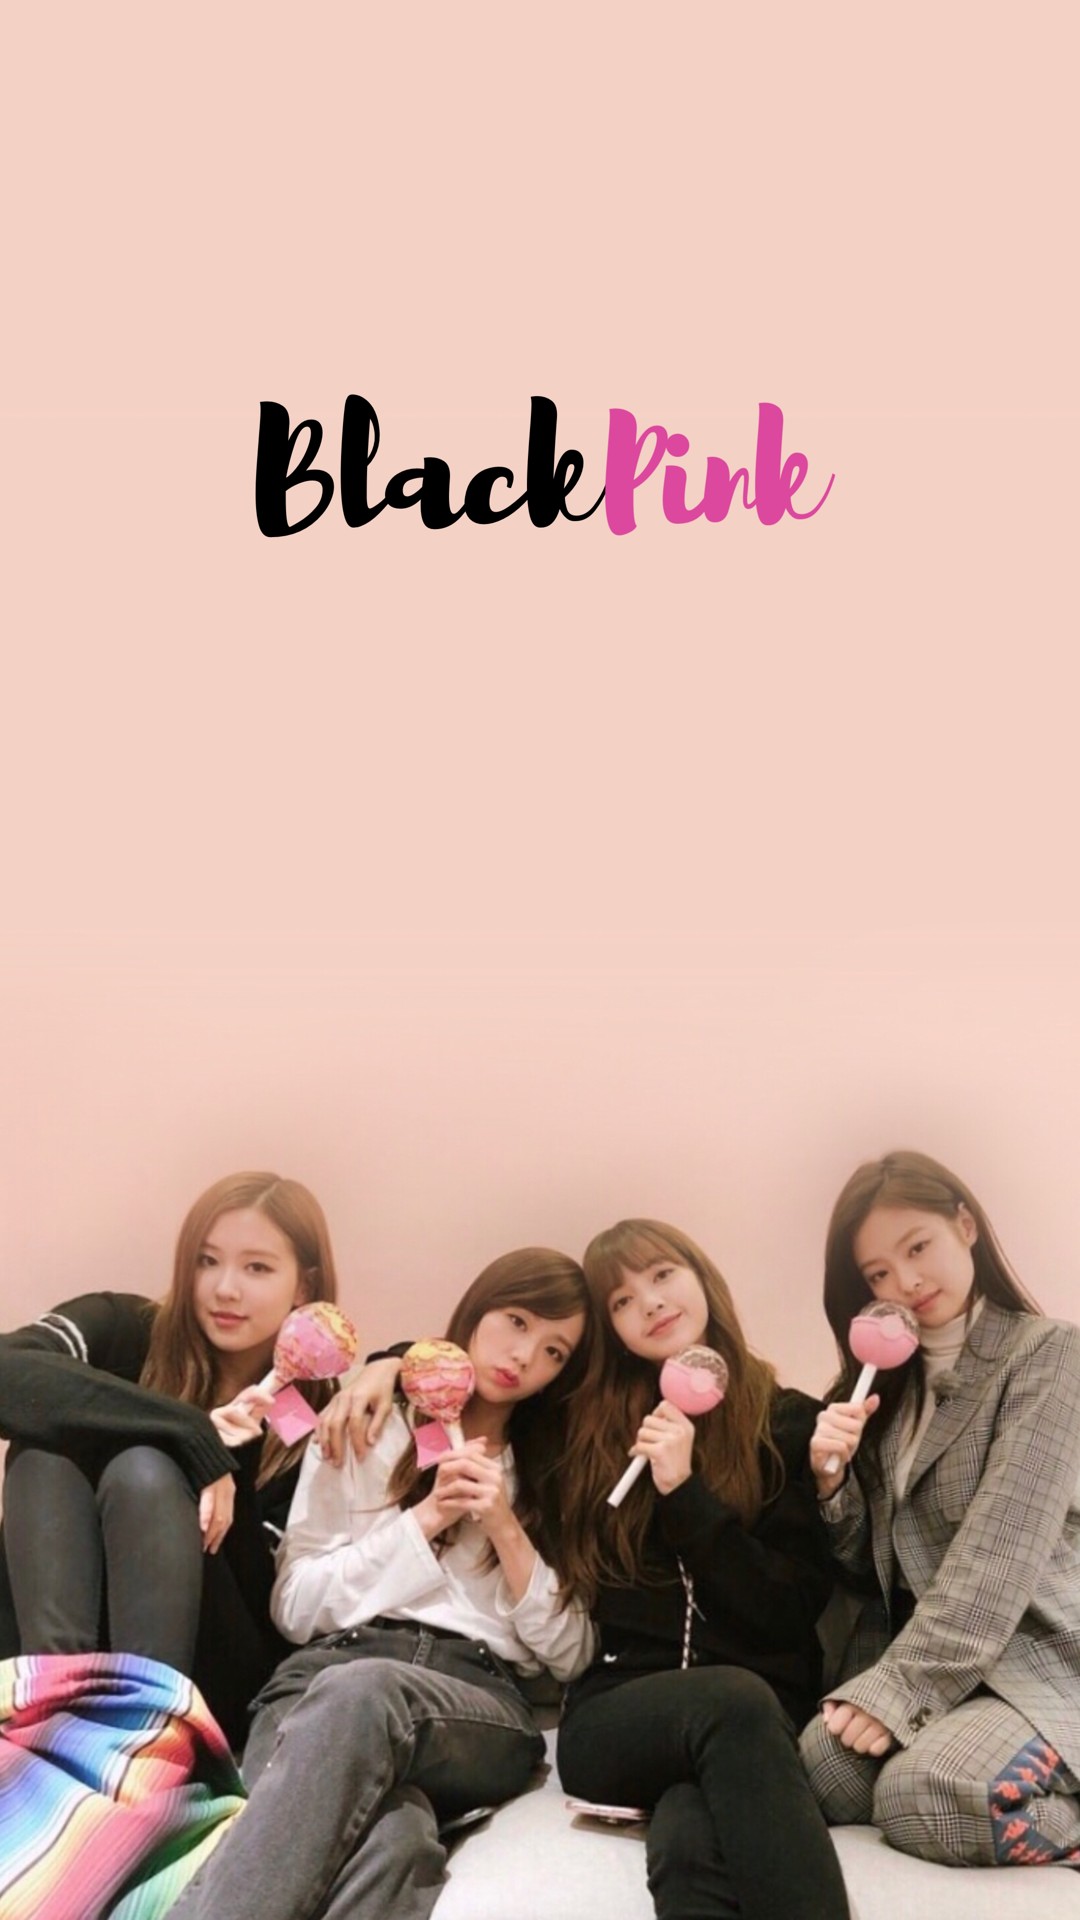 Iphone Blackpink Wallpaper Hd , HD Wallpaper & Backgrounds